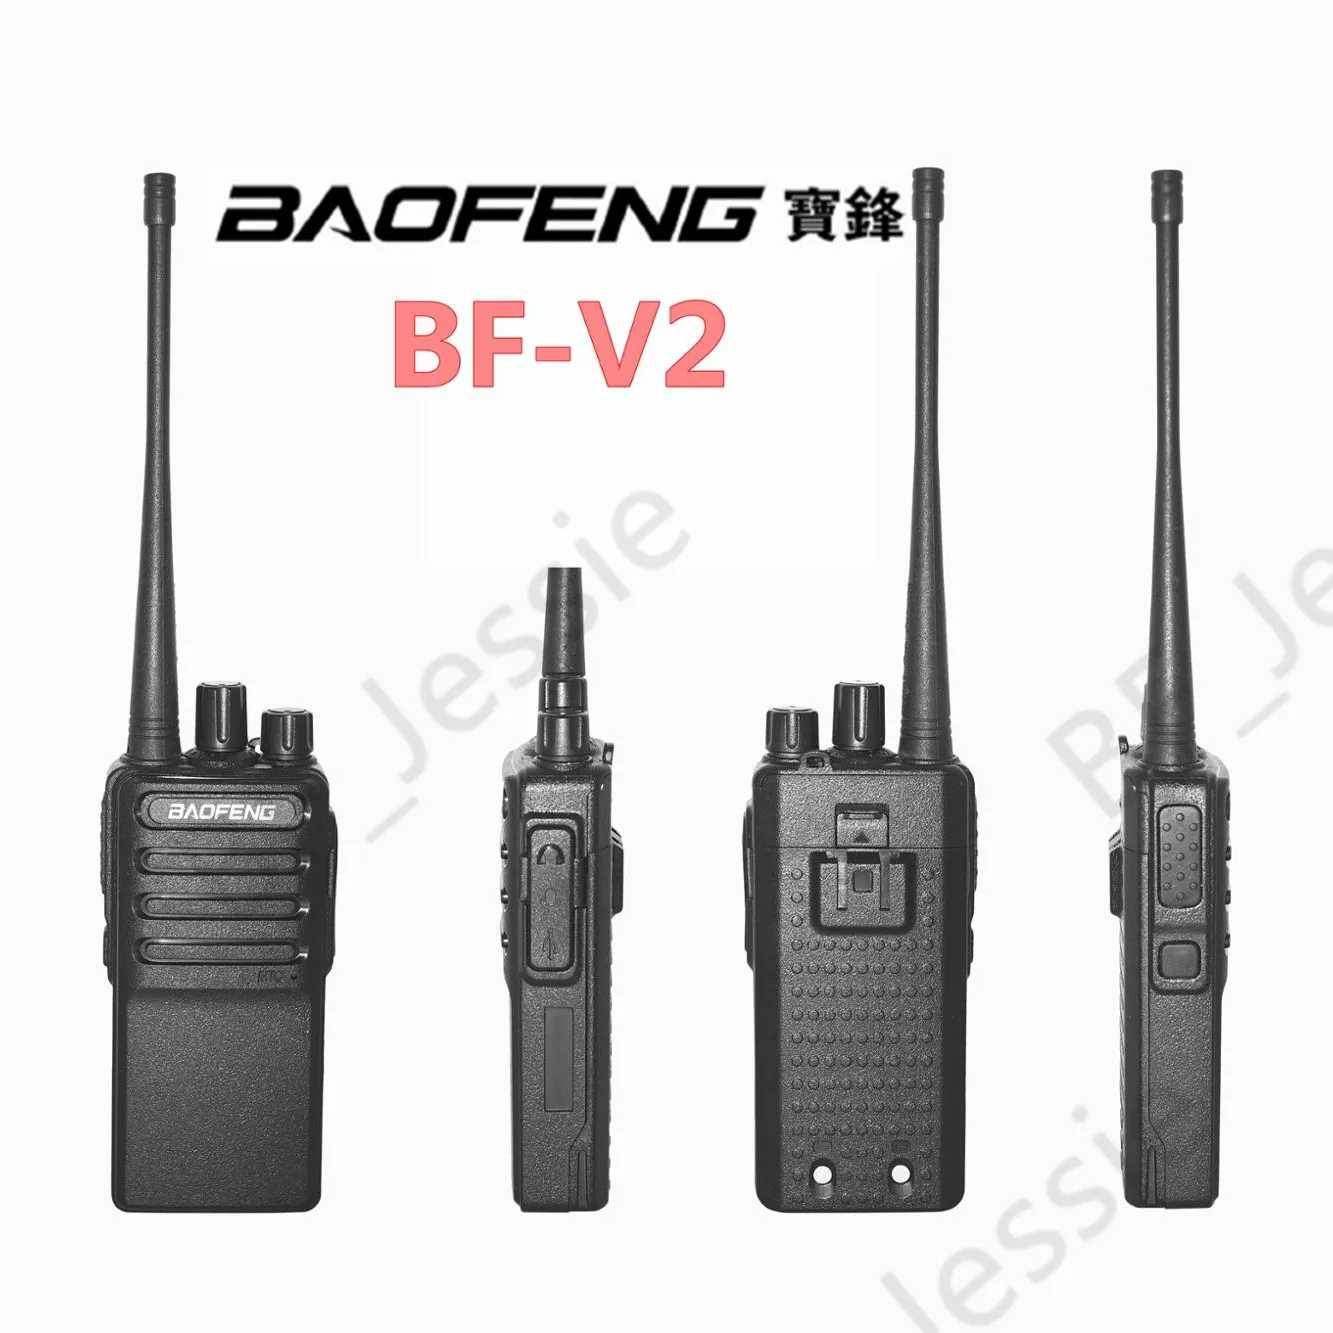 Baofeng-walkie-talkie BF-V2, radio FM de 16 canales, USB, 5V, transceptor de radio ham de carga rápida, novedad